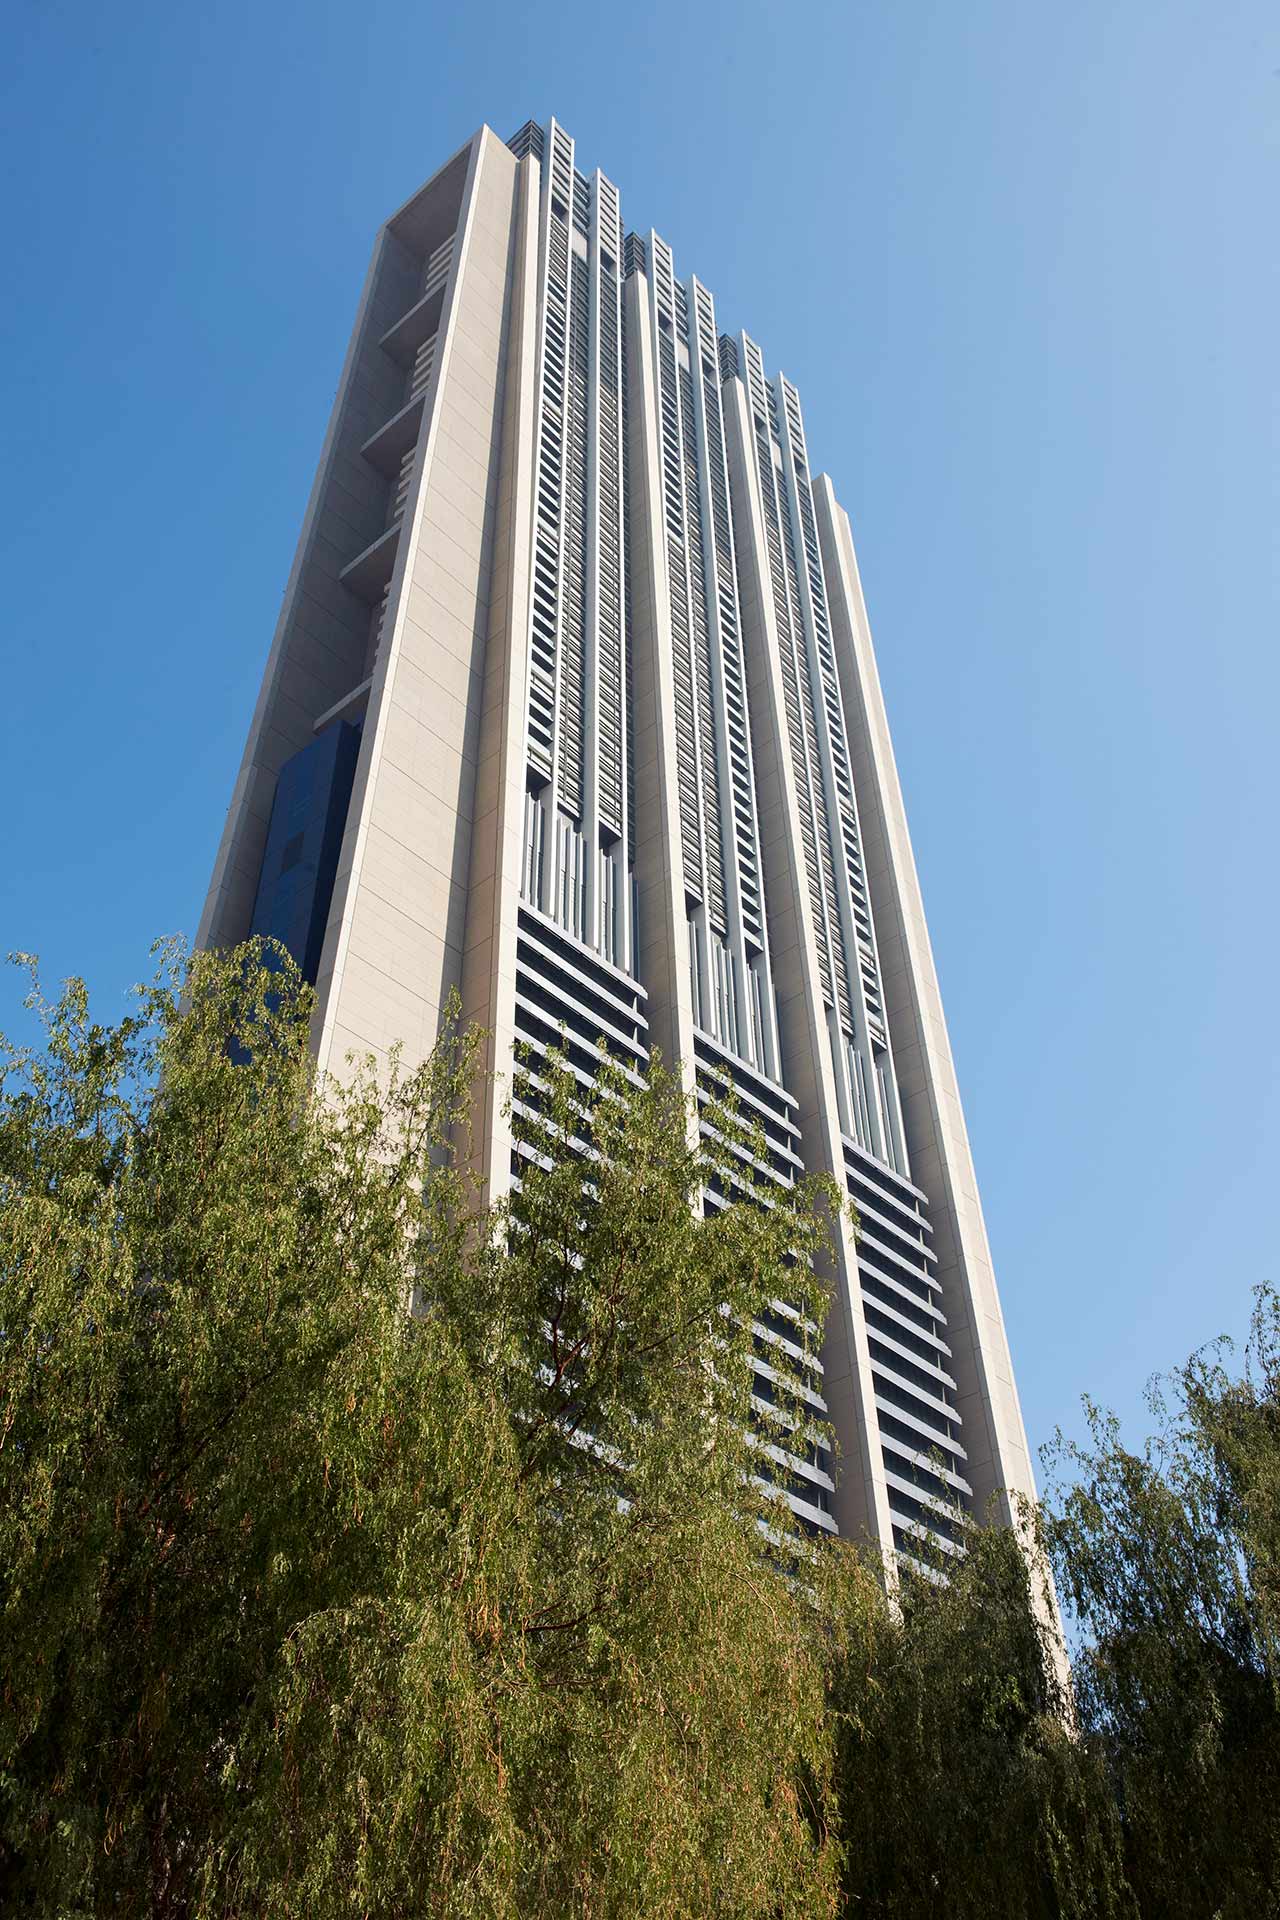 Das Foto zeigt den Index Tower in Dubai, ein modernes Hochhaus entworfen von Foster + Partners, mit grünem Laub im Vordergrund.